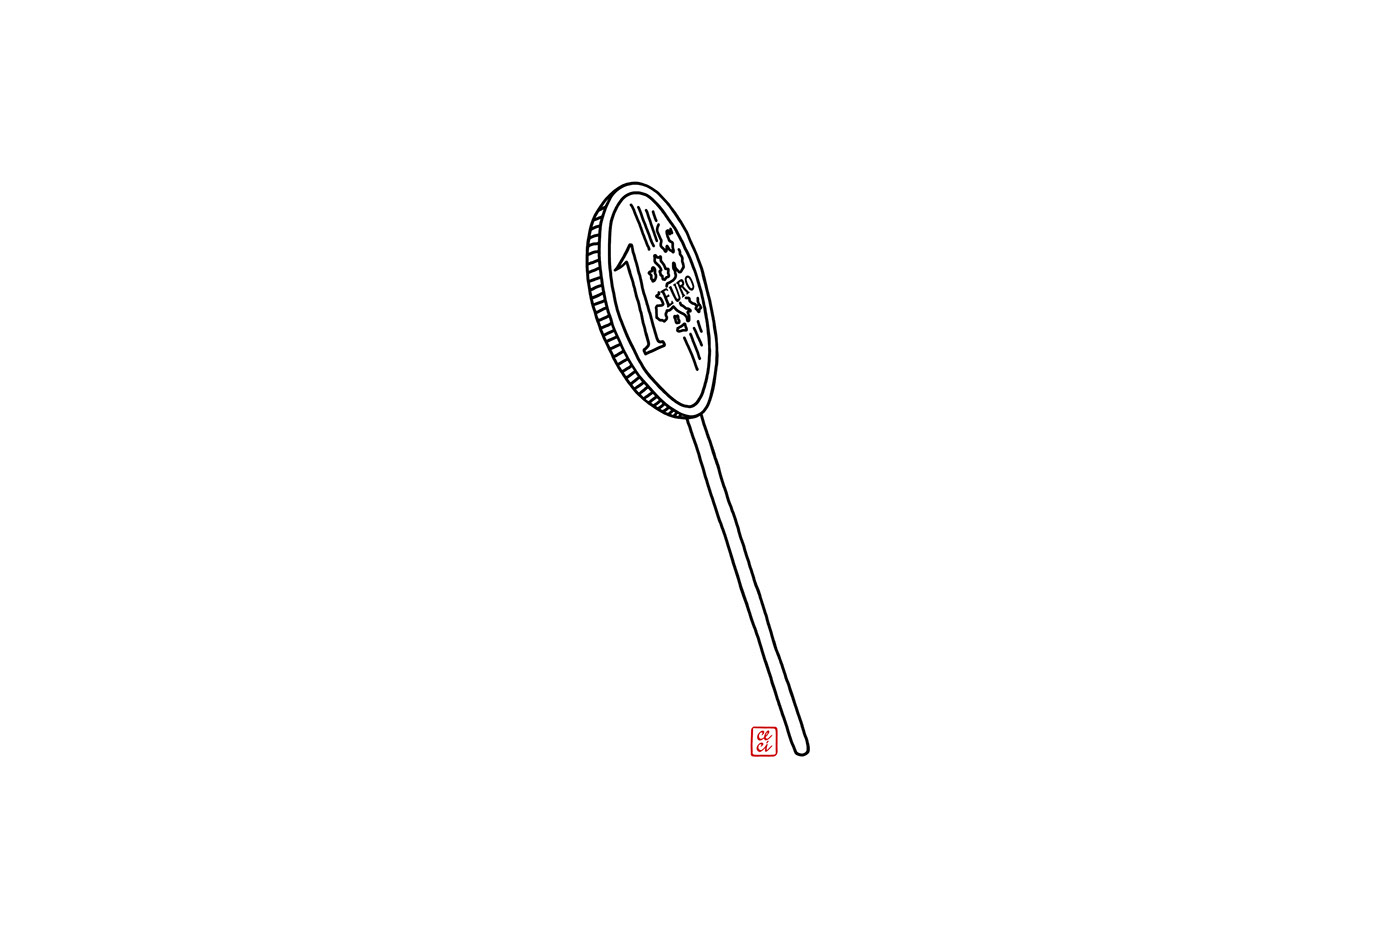 lollipop coin euro Drawing  lecca lecca moneta disegno